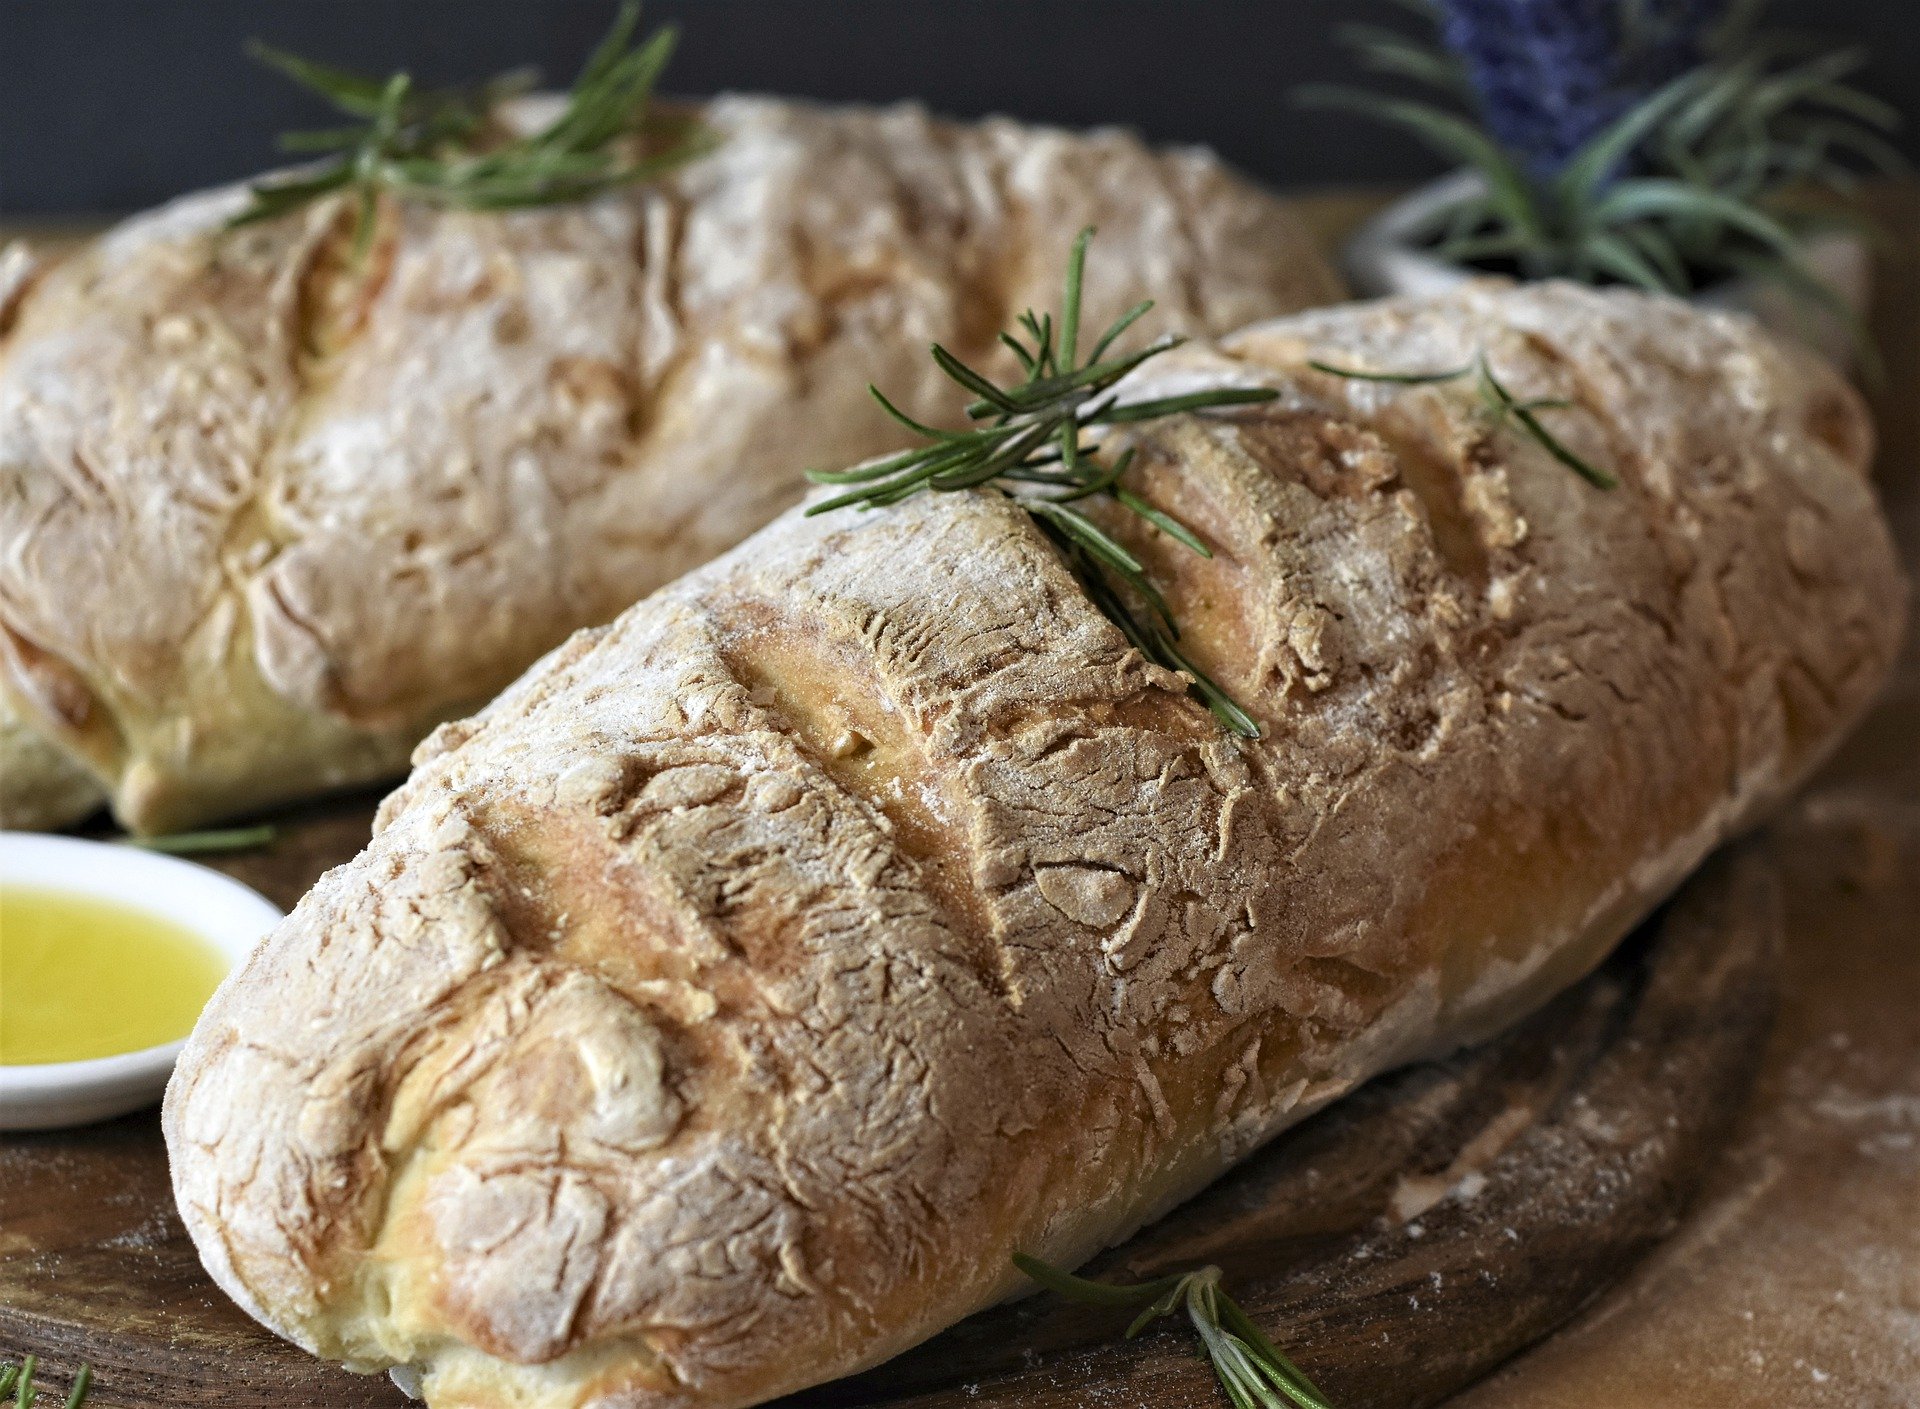 Französisches Brot im Bräter